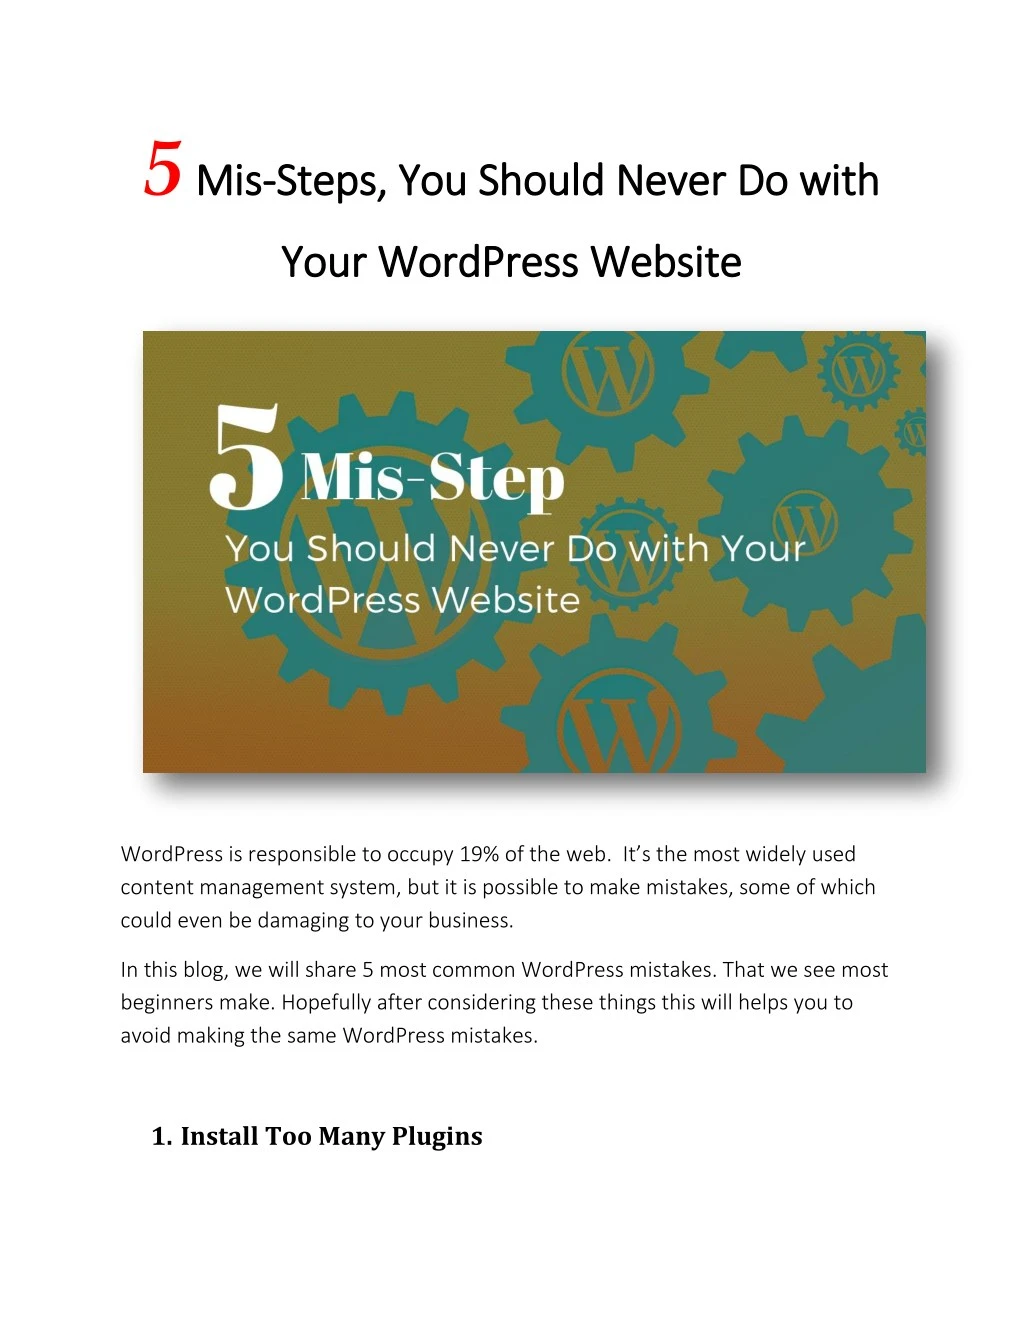 5 mis mis s steps